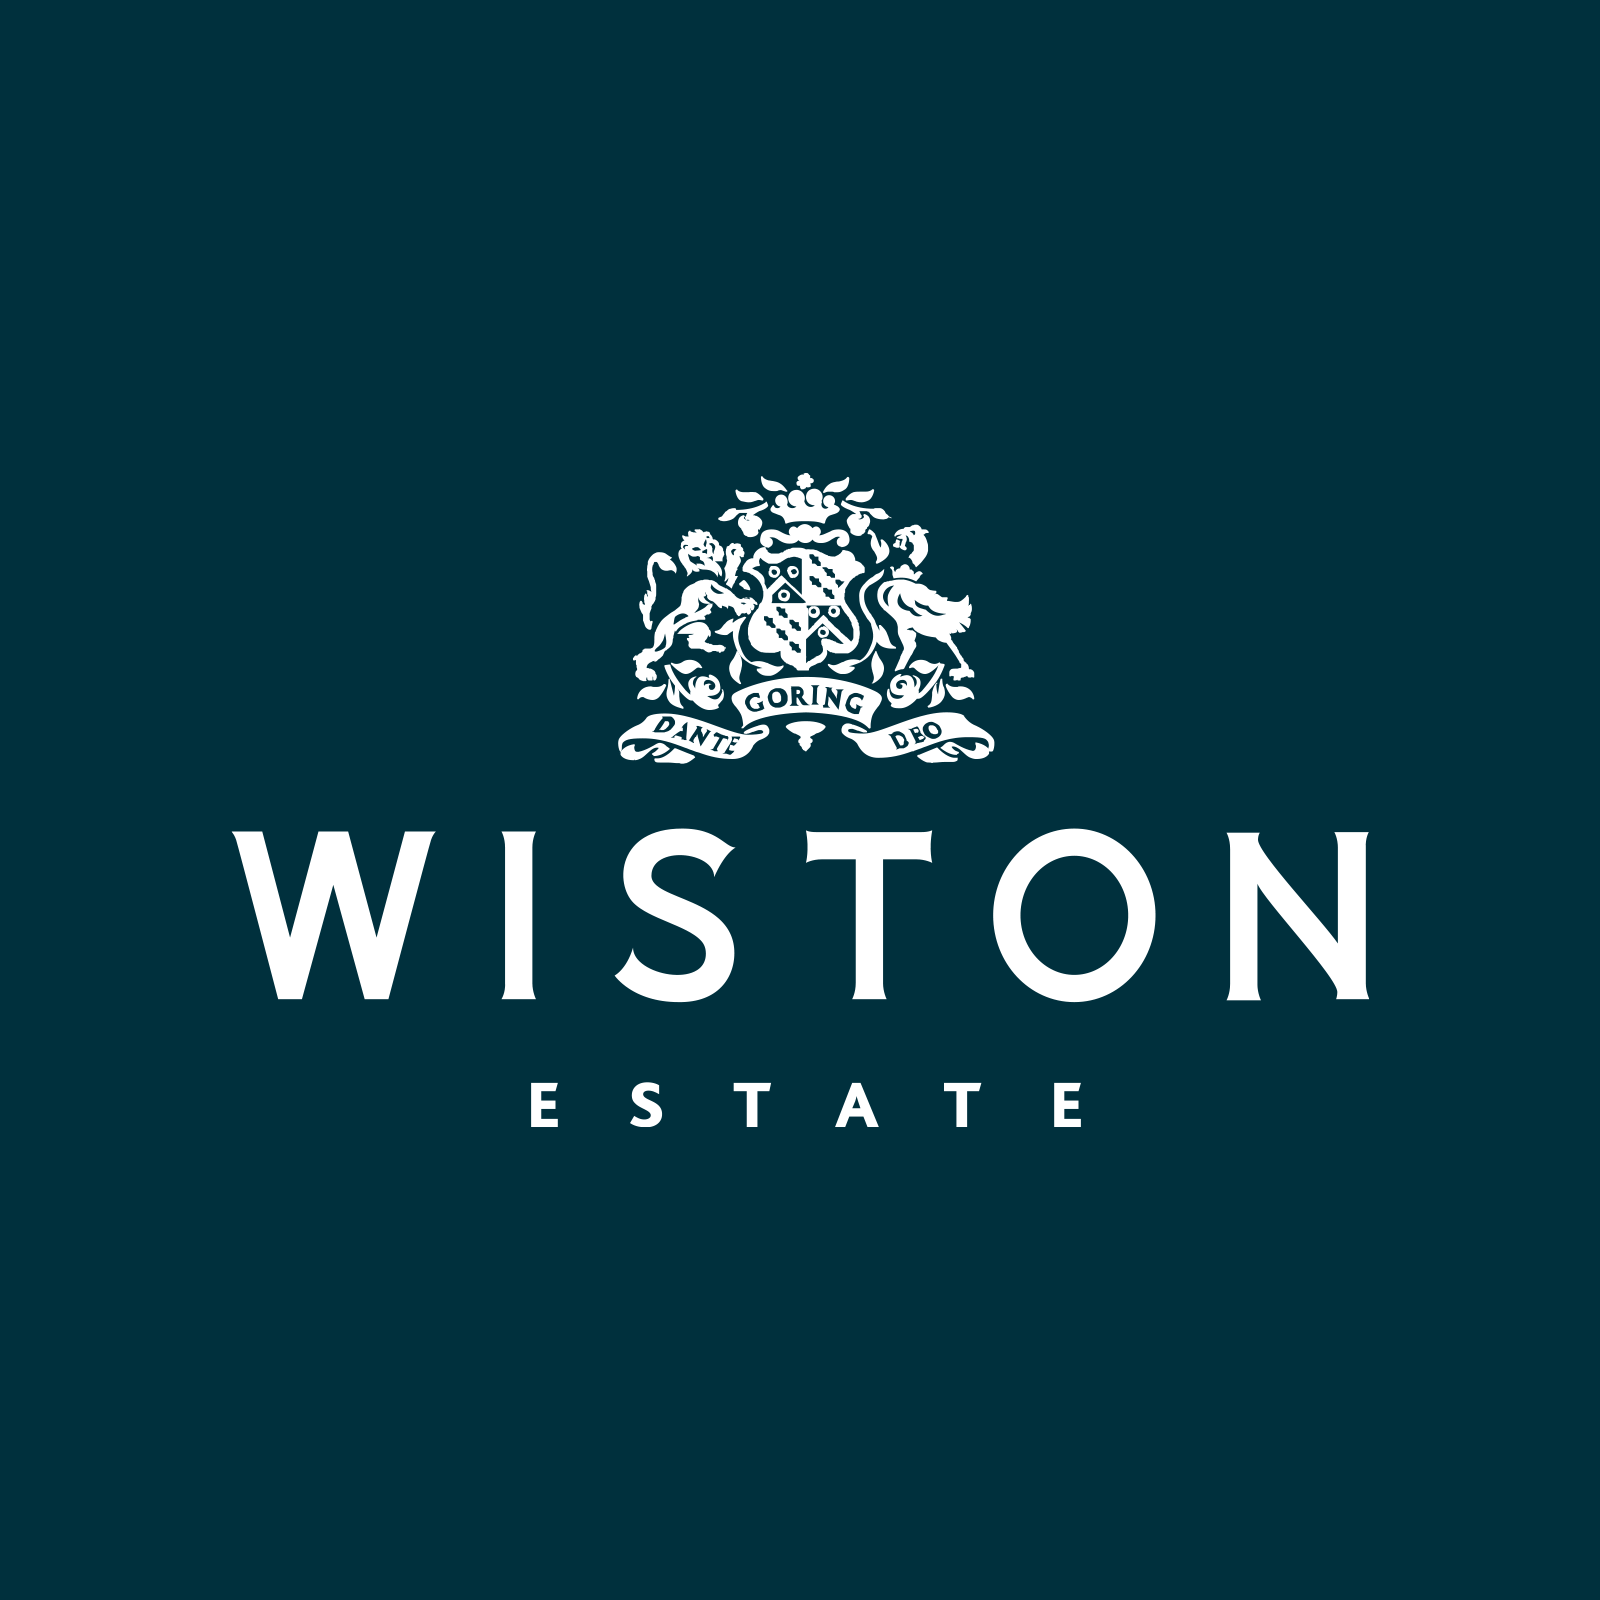 (c) Wistonestate.com